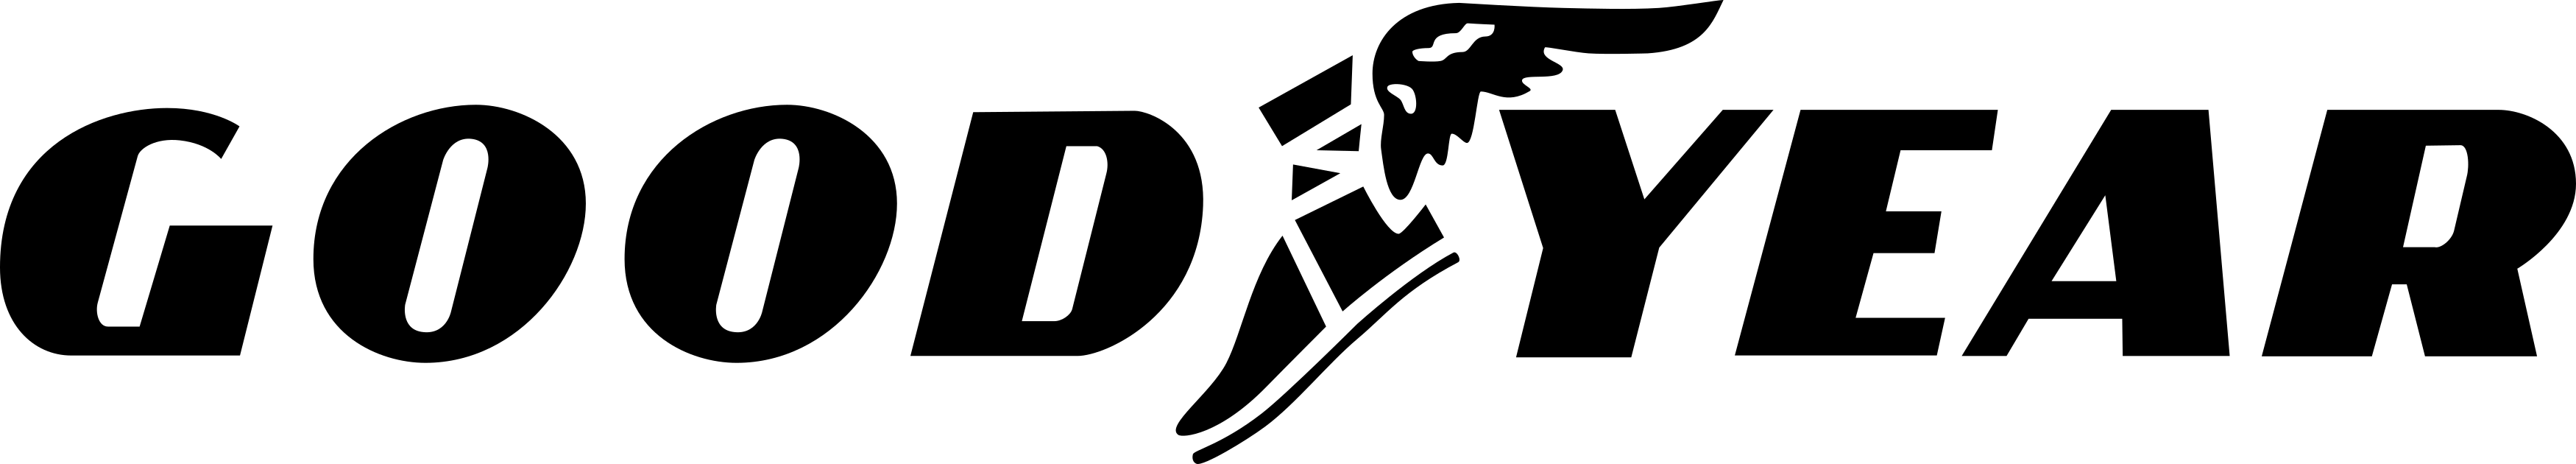 Logomarca da Goodyear